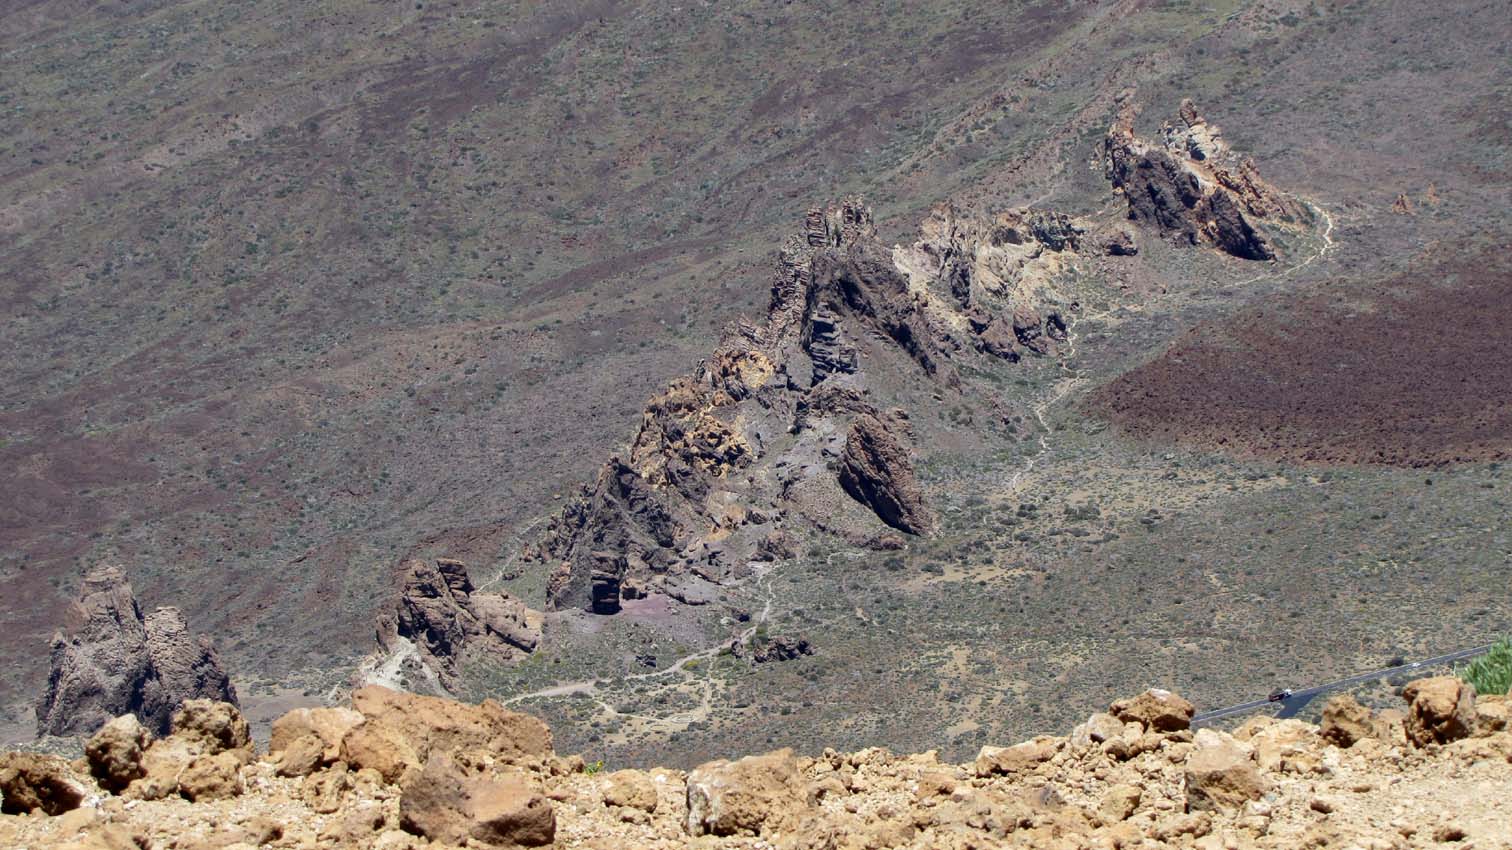 Las Roques de Garcia